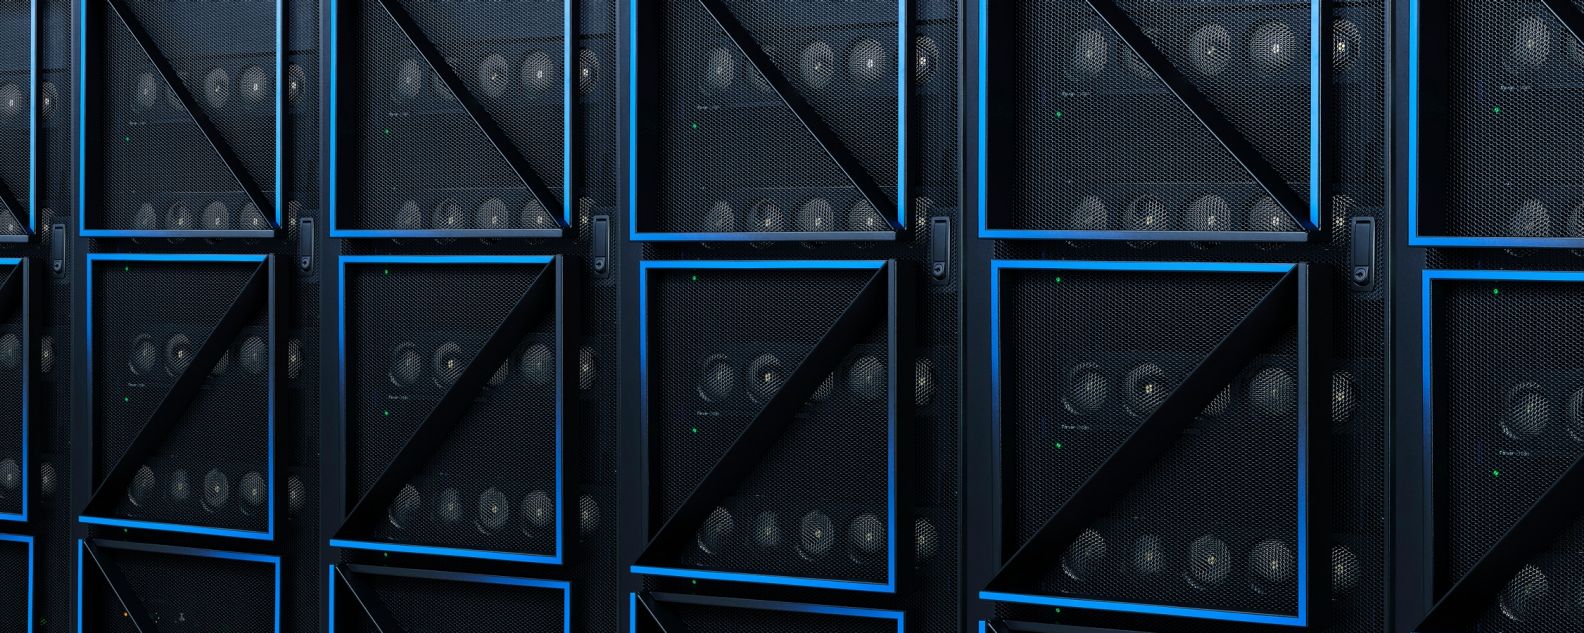 Eine Reihe von Computer-Server-Racks in einem Rechenzentrum mit dem IBM Power10-Klappendesign